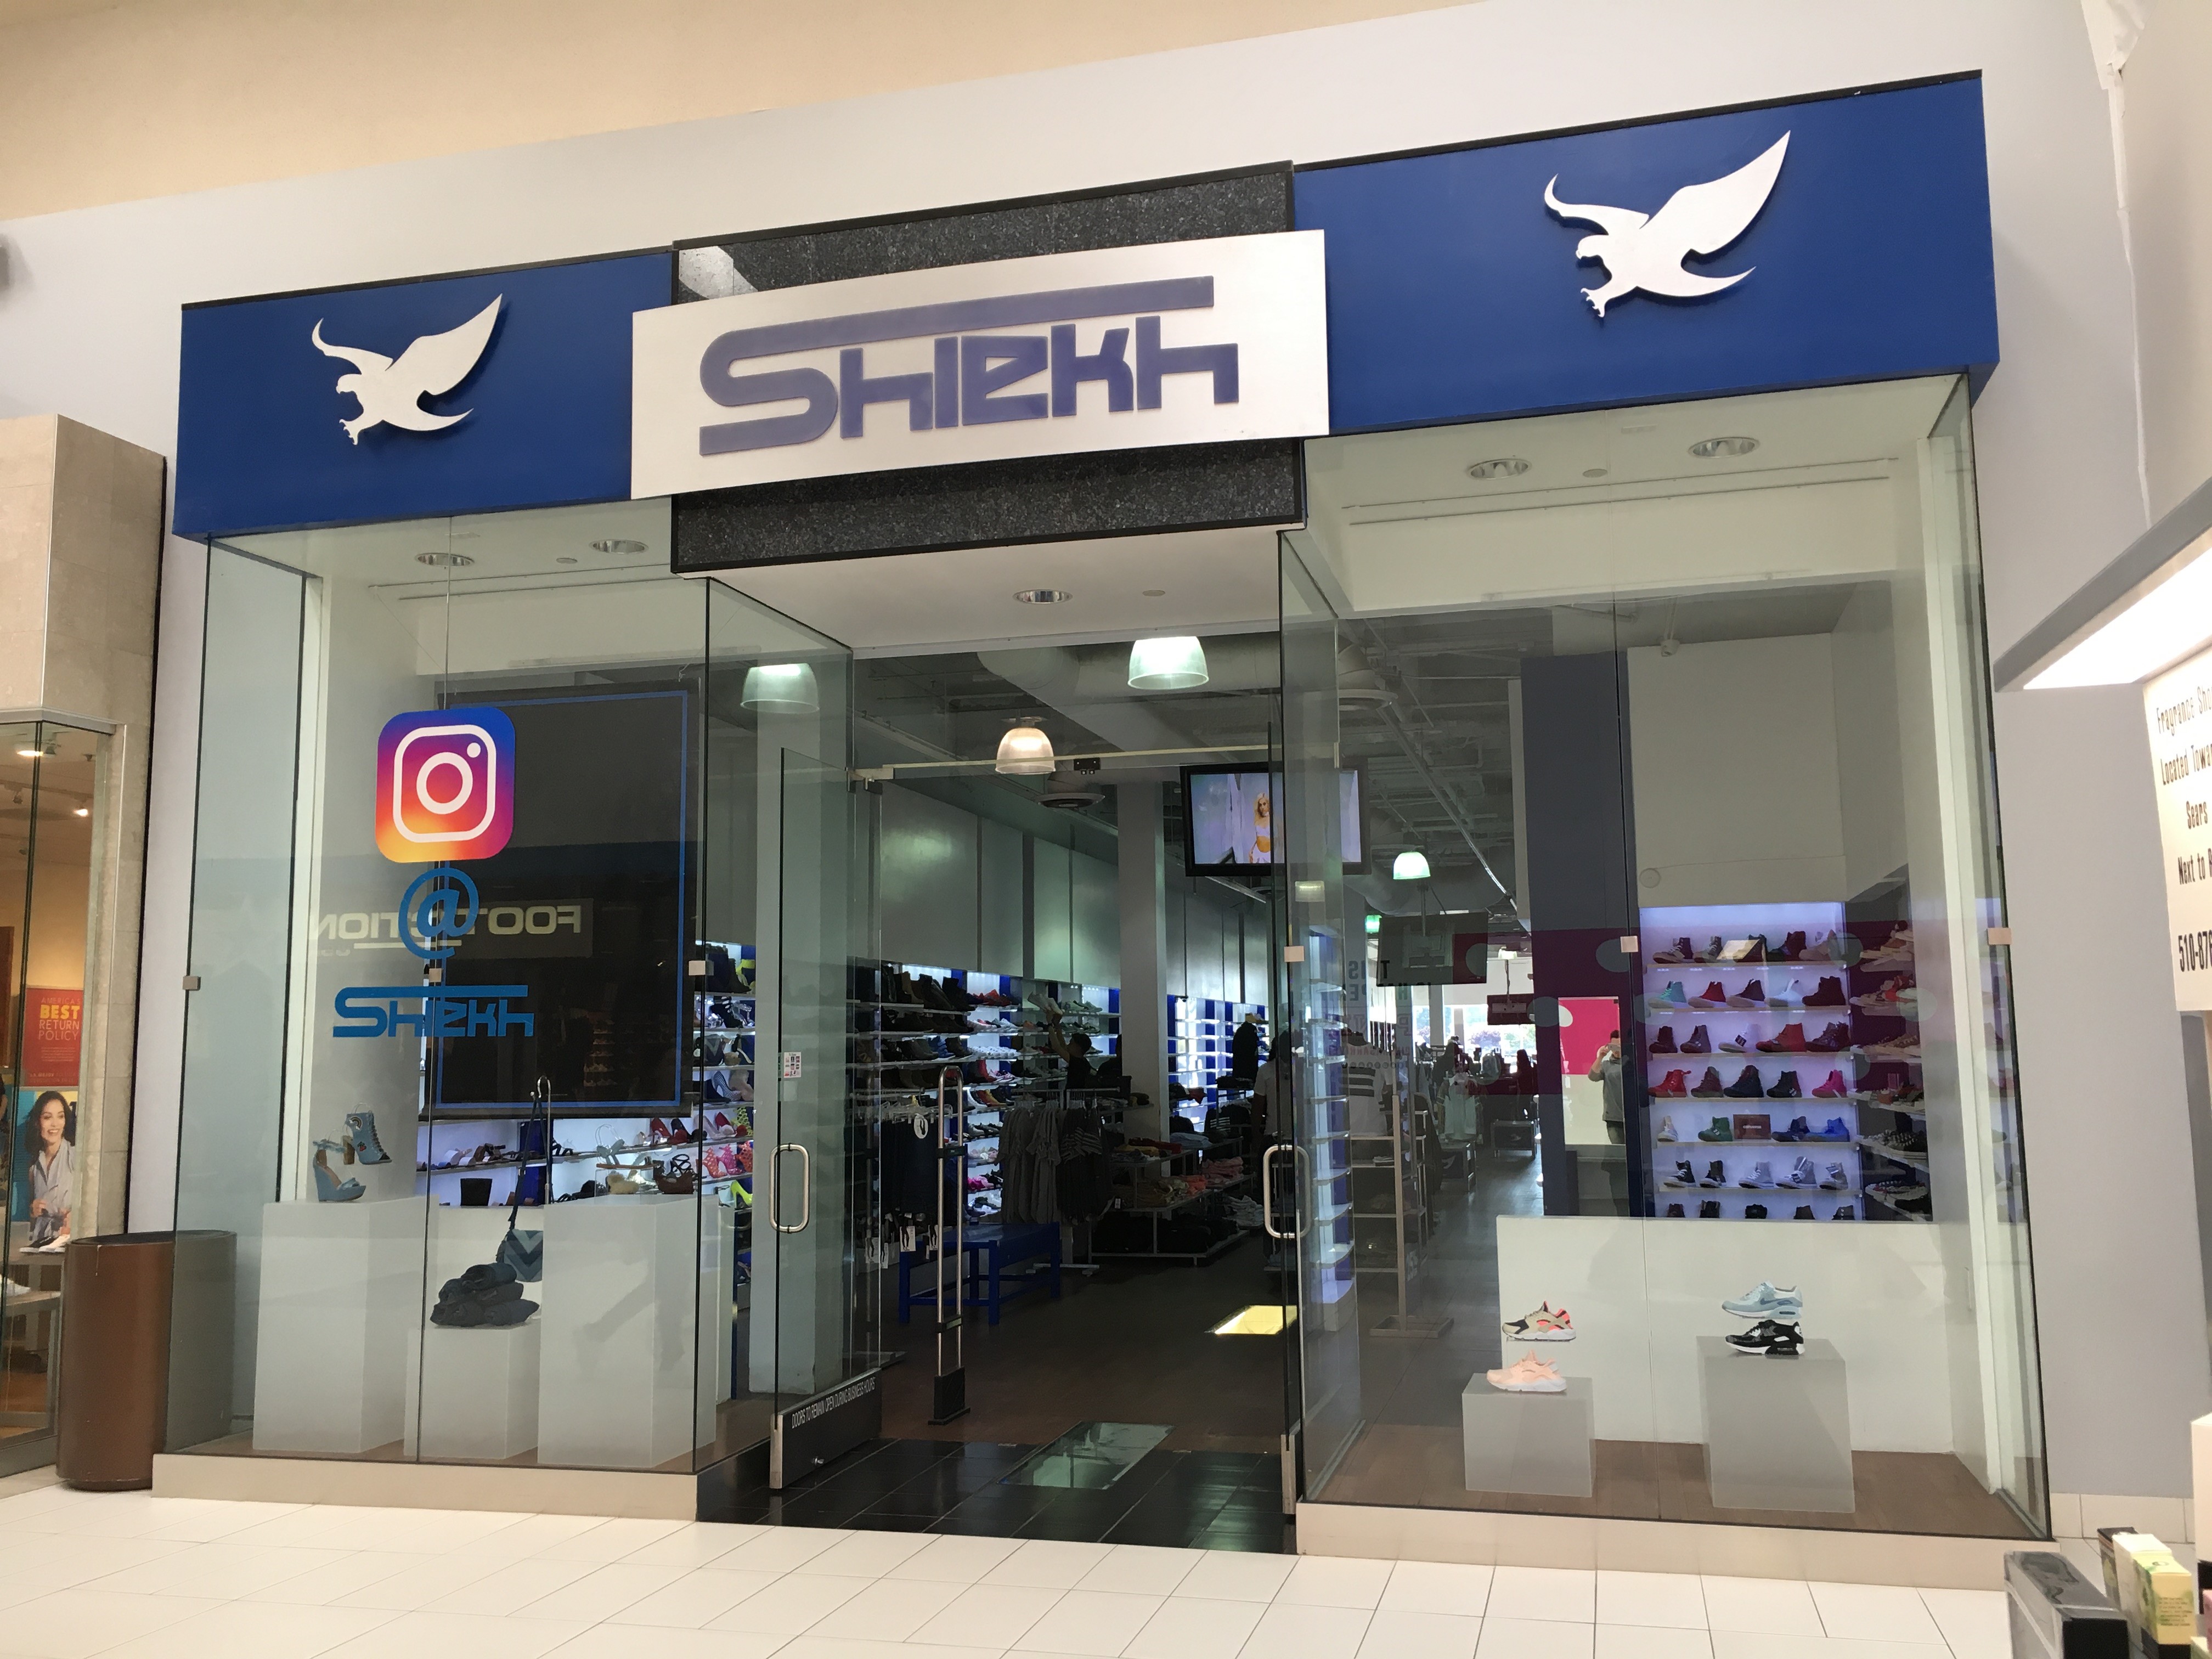 shiekh shoe store near me